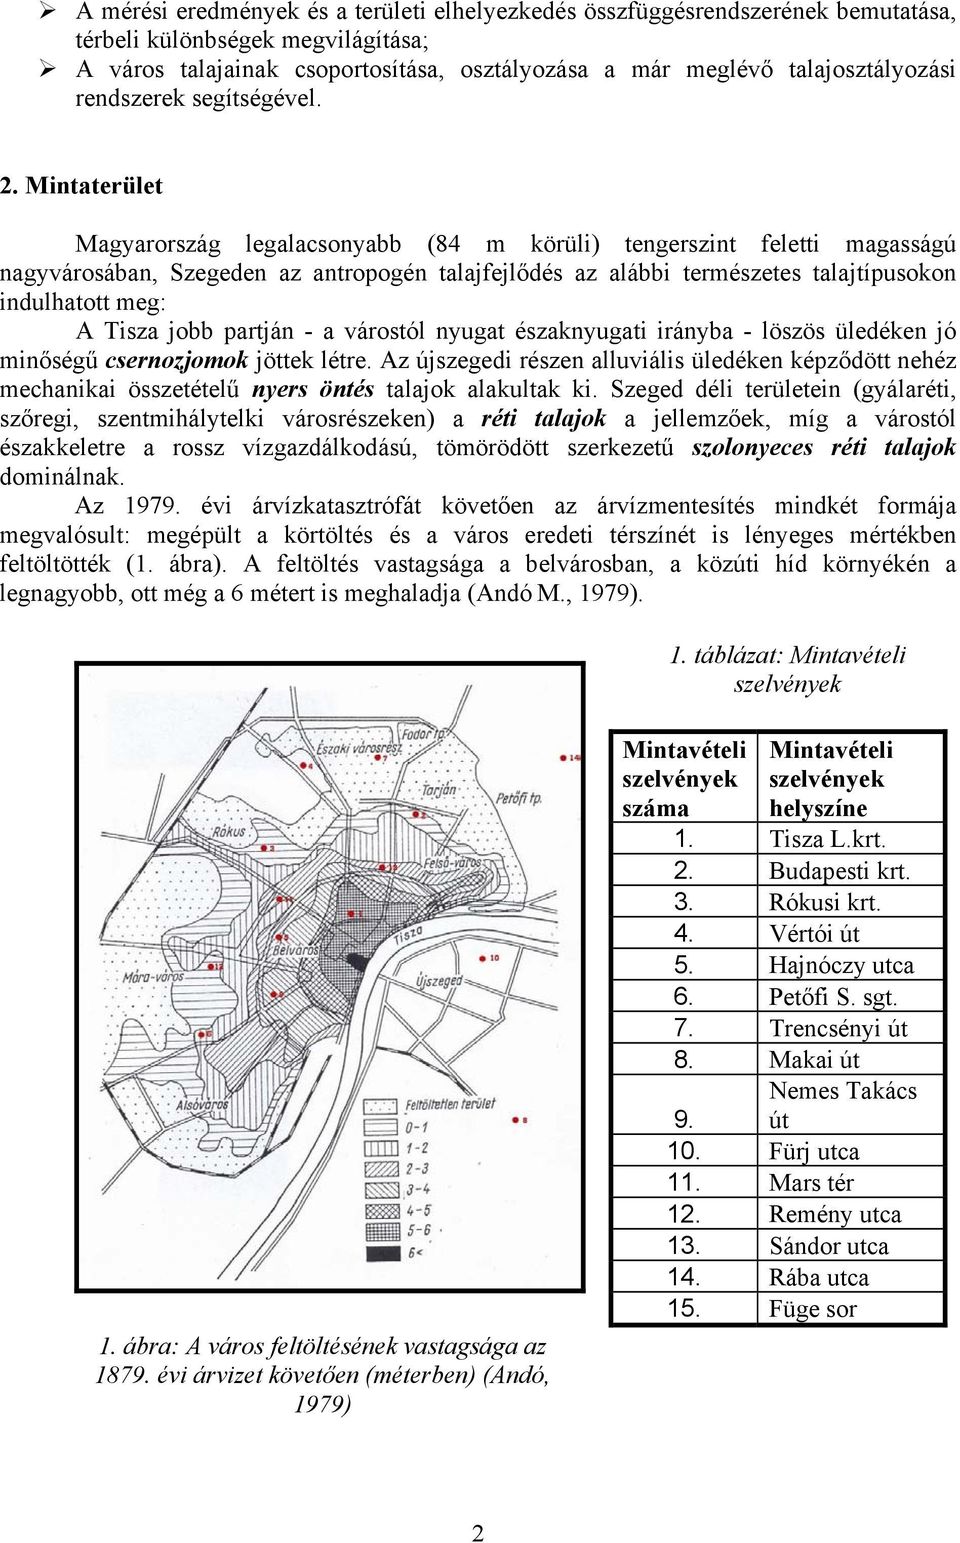 Mintaterület Magyarország legalacsonyabb (84 m körüli) tengerszint feletti magasságú nagyvárosában, Szegeden az antropogén talajfejlődés az alábbi természetes talajtípusokon indulhatott meg: A Tisza